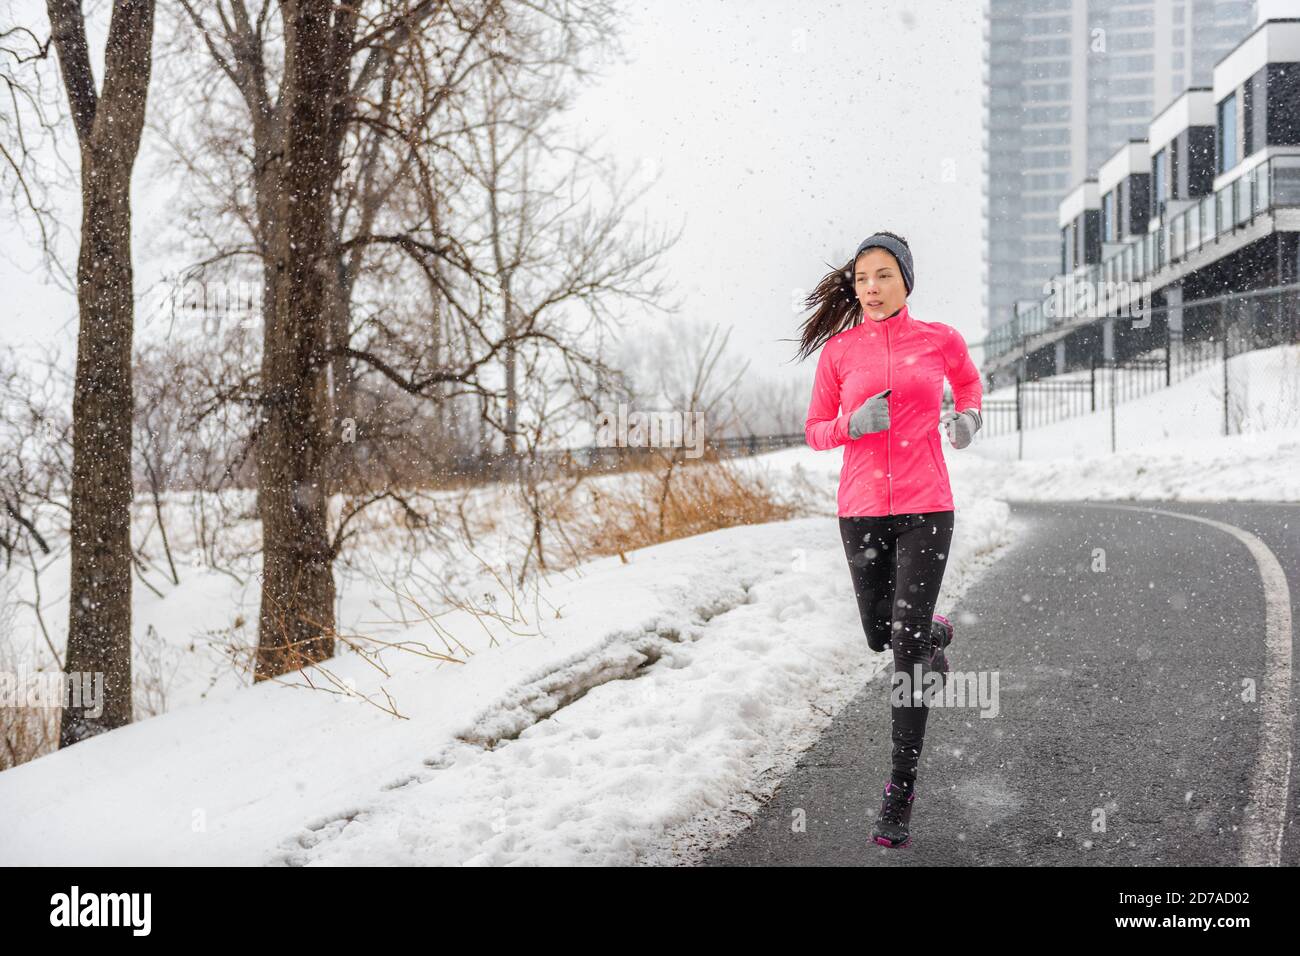 Hiver running asiatique fille portant des vêtements temps froid pour l'extérieur exercice dans la tempête de neige chute de neige pendant l'entraînement d'hiver à l'extérieur rue de la ville Banque D'Images